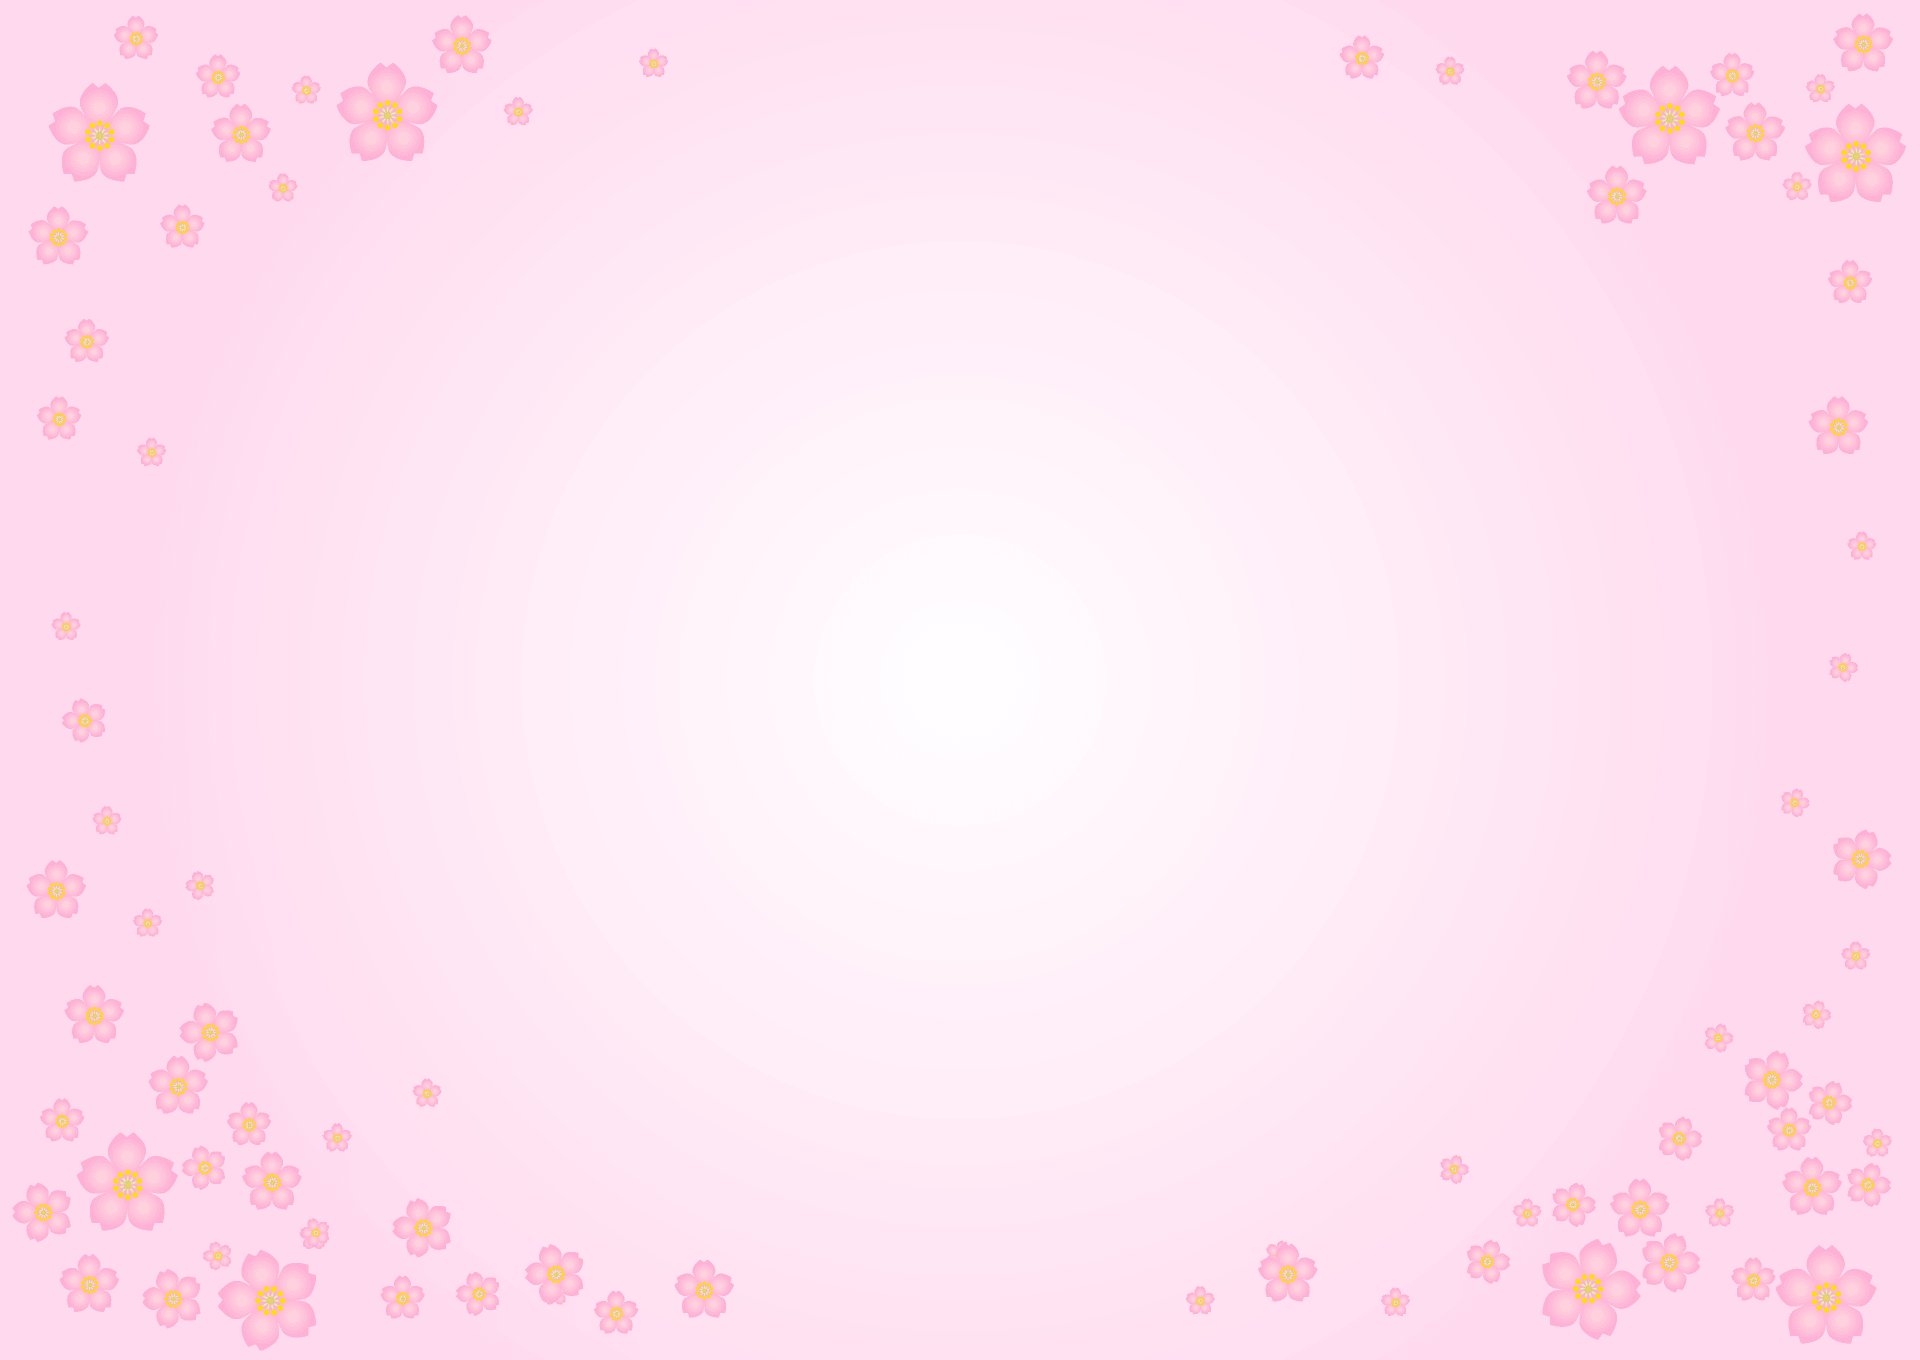 薄ピンクの桜の花フレーム イラスト素材 超多くの無料かわいいイラスト素材